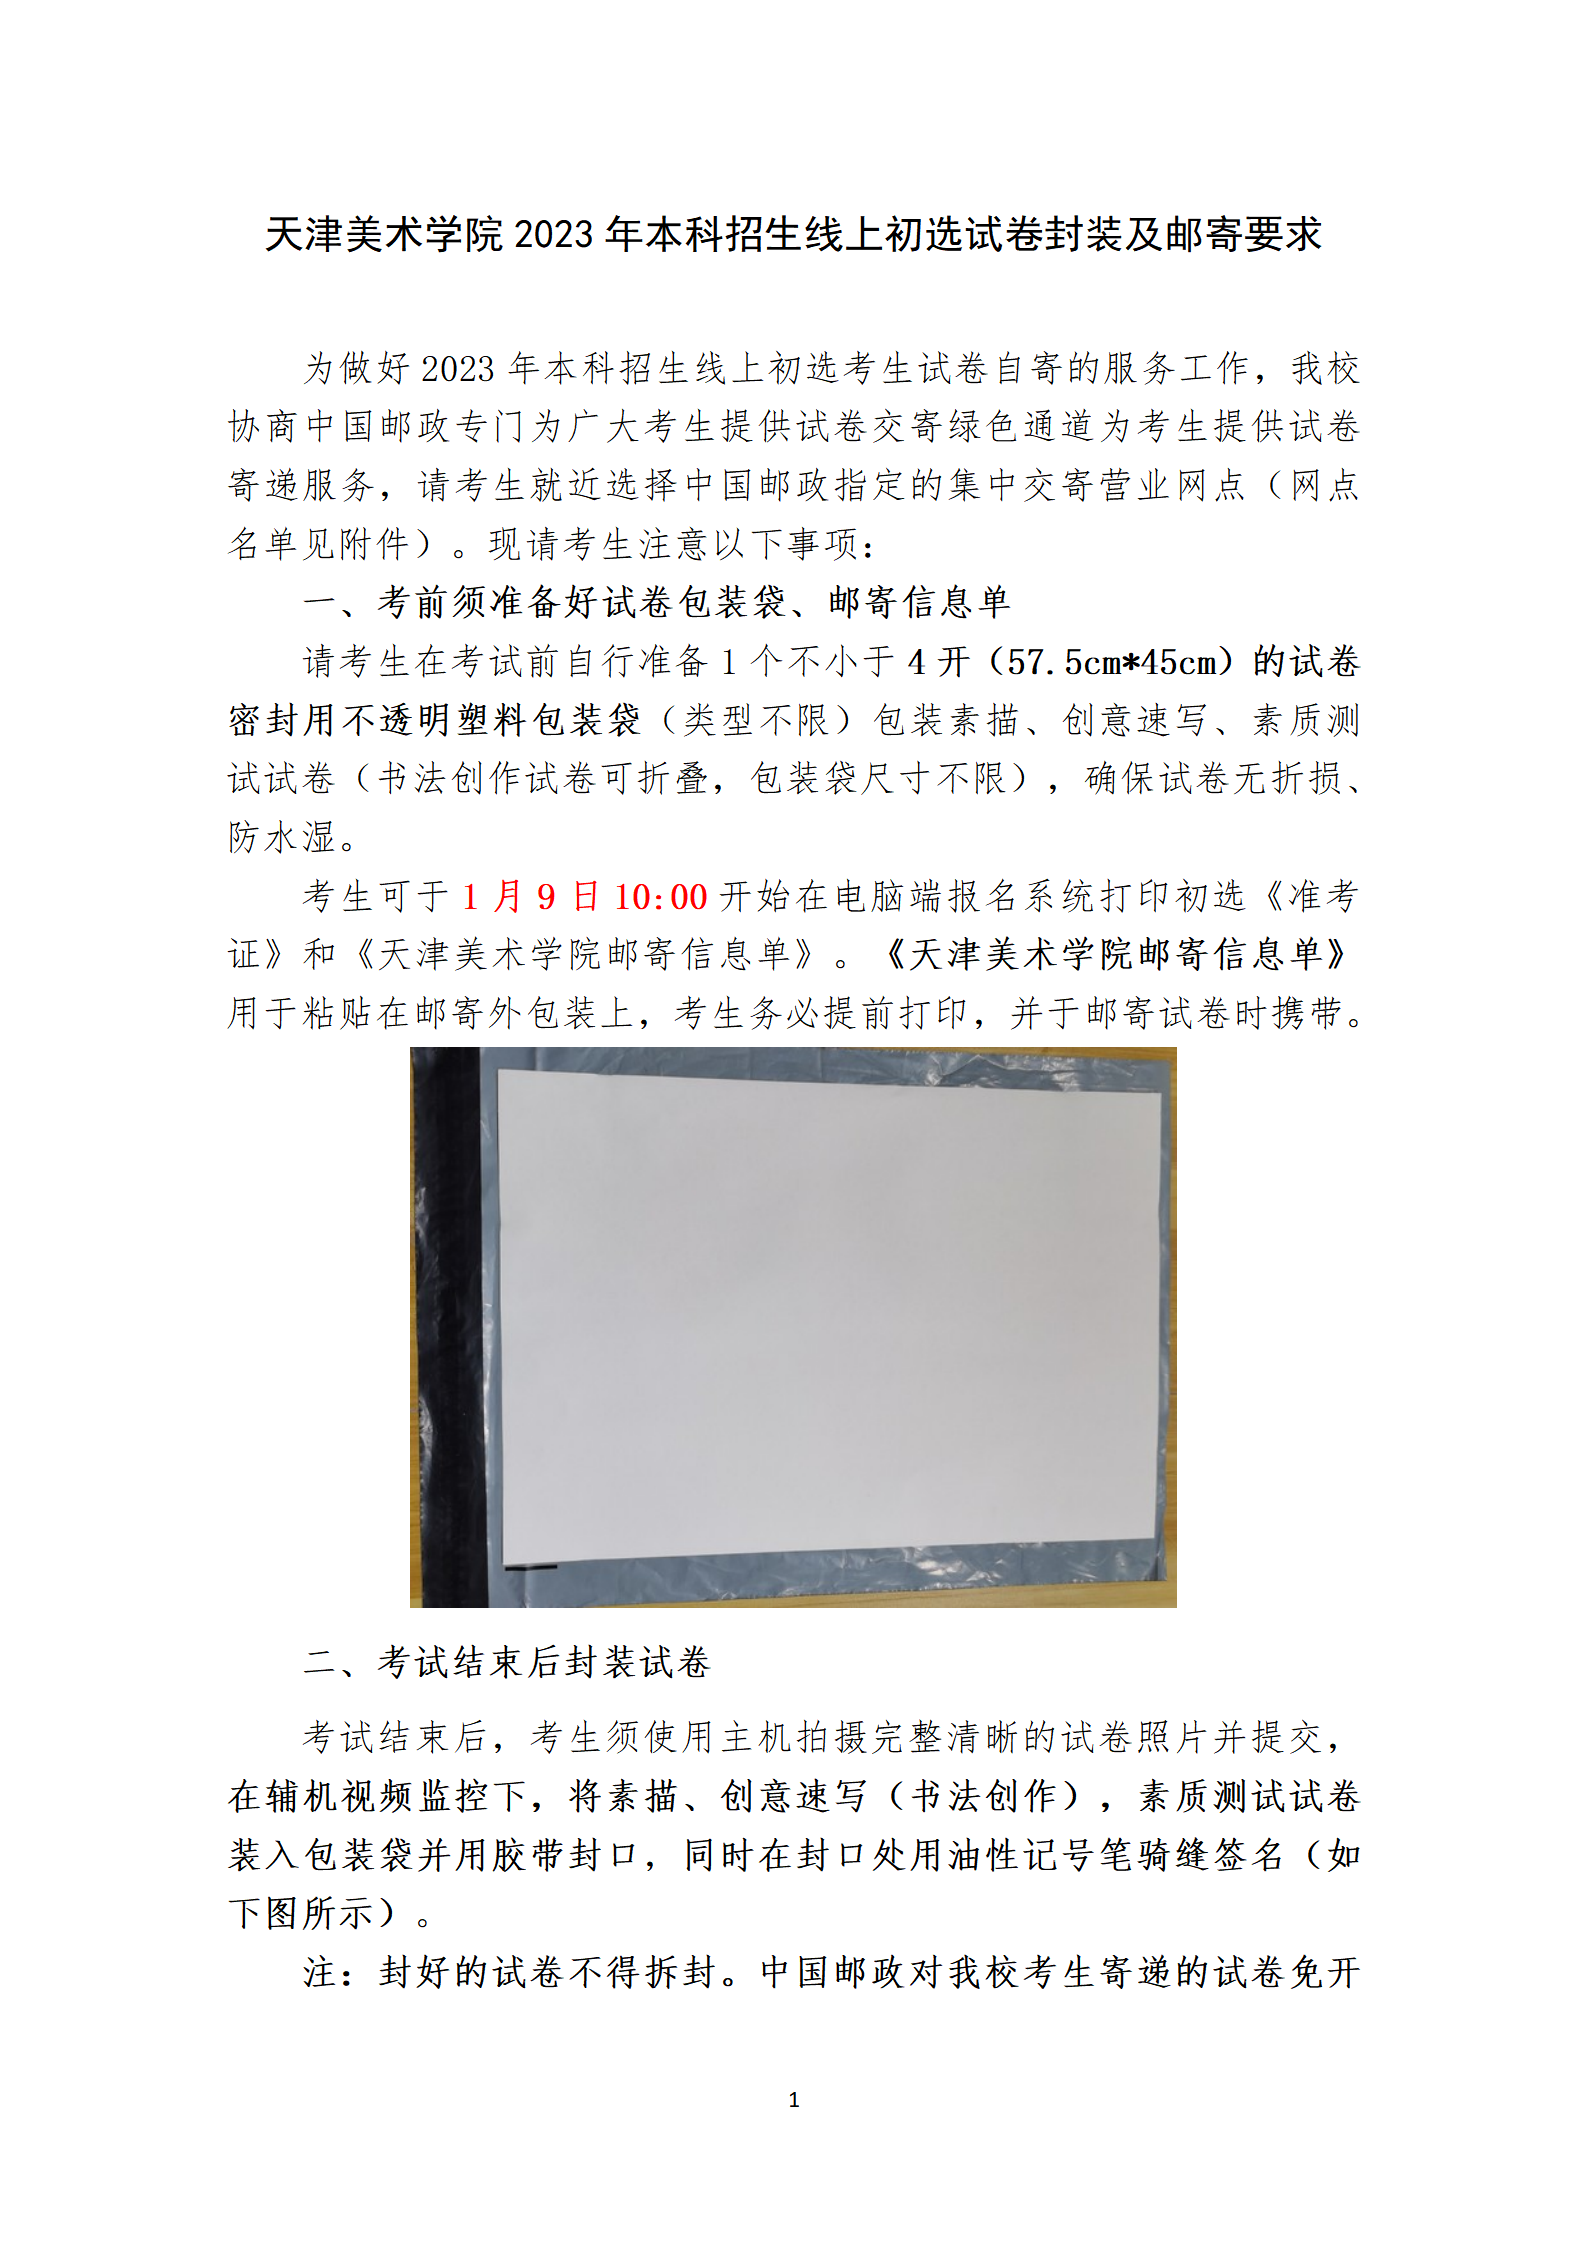 附件1：天津美术学院2023年本科招生线上初选试卷封装及邮寄要求_01.png